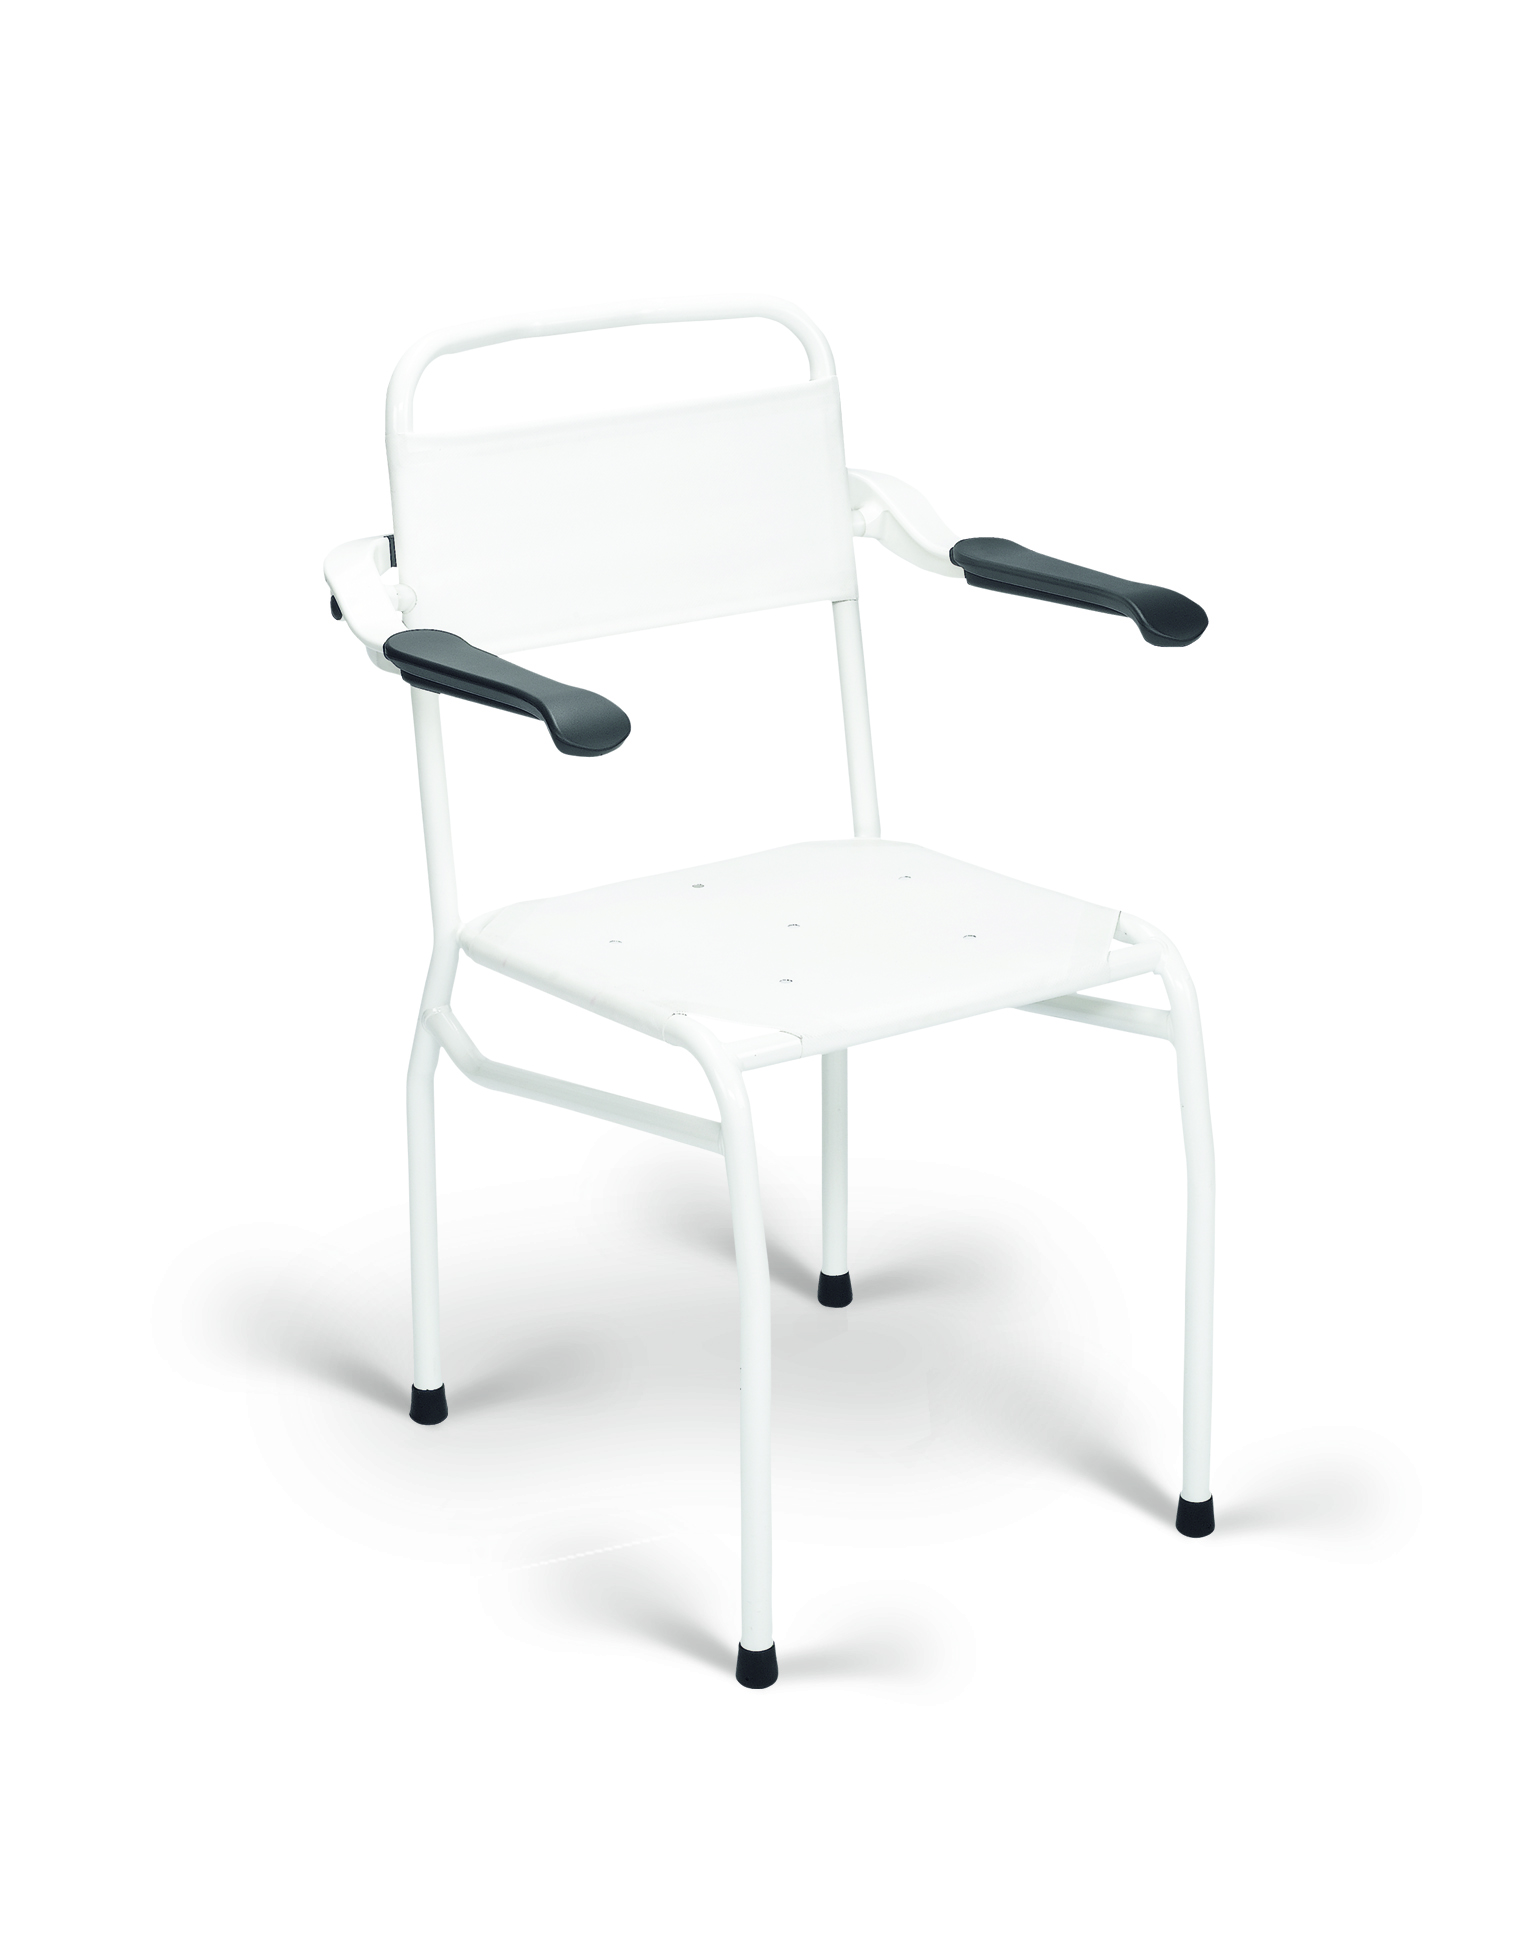 Chaise douche hauteur d'assise 54 cm - acier revêtu - blanc - 1 pc